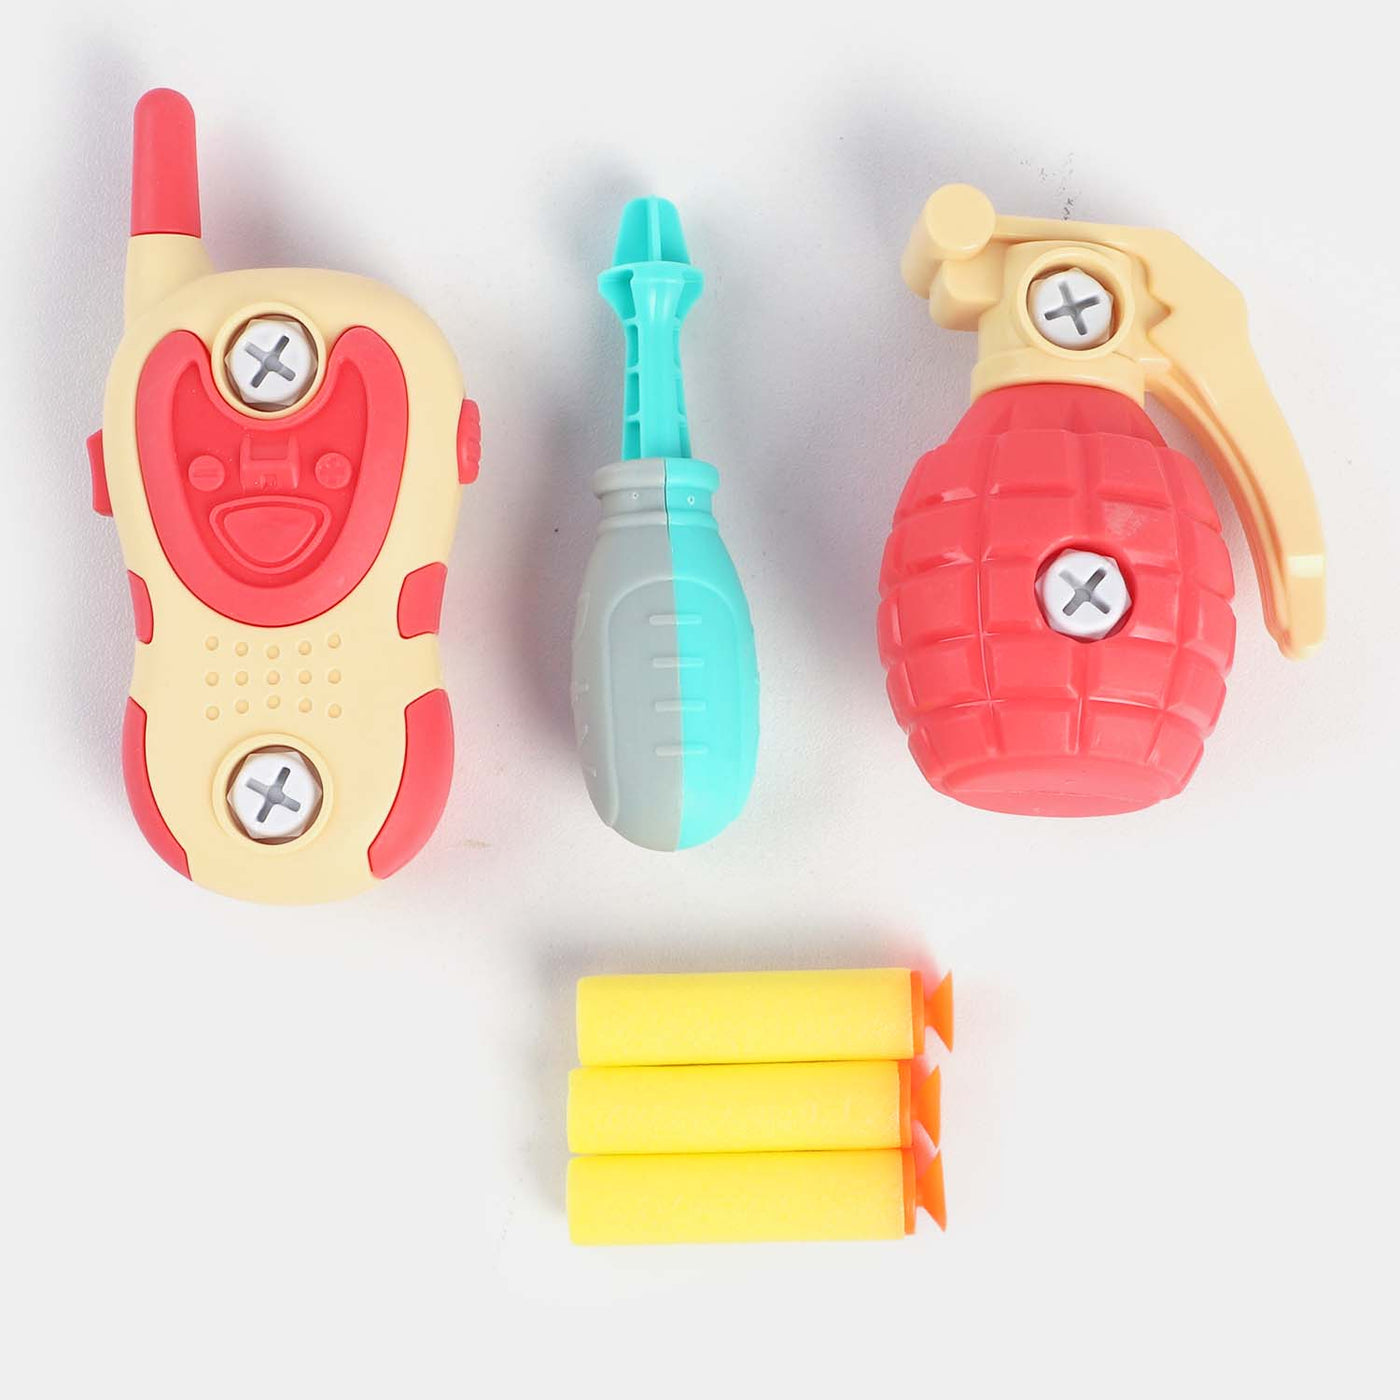 DIY Target Toy Play Set For Kids